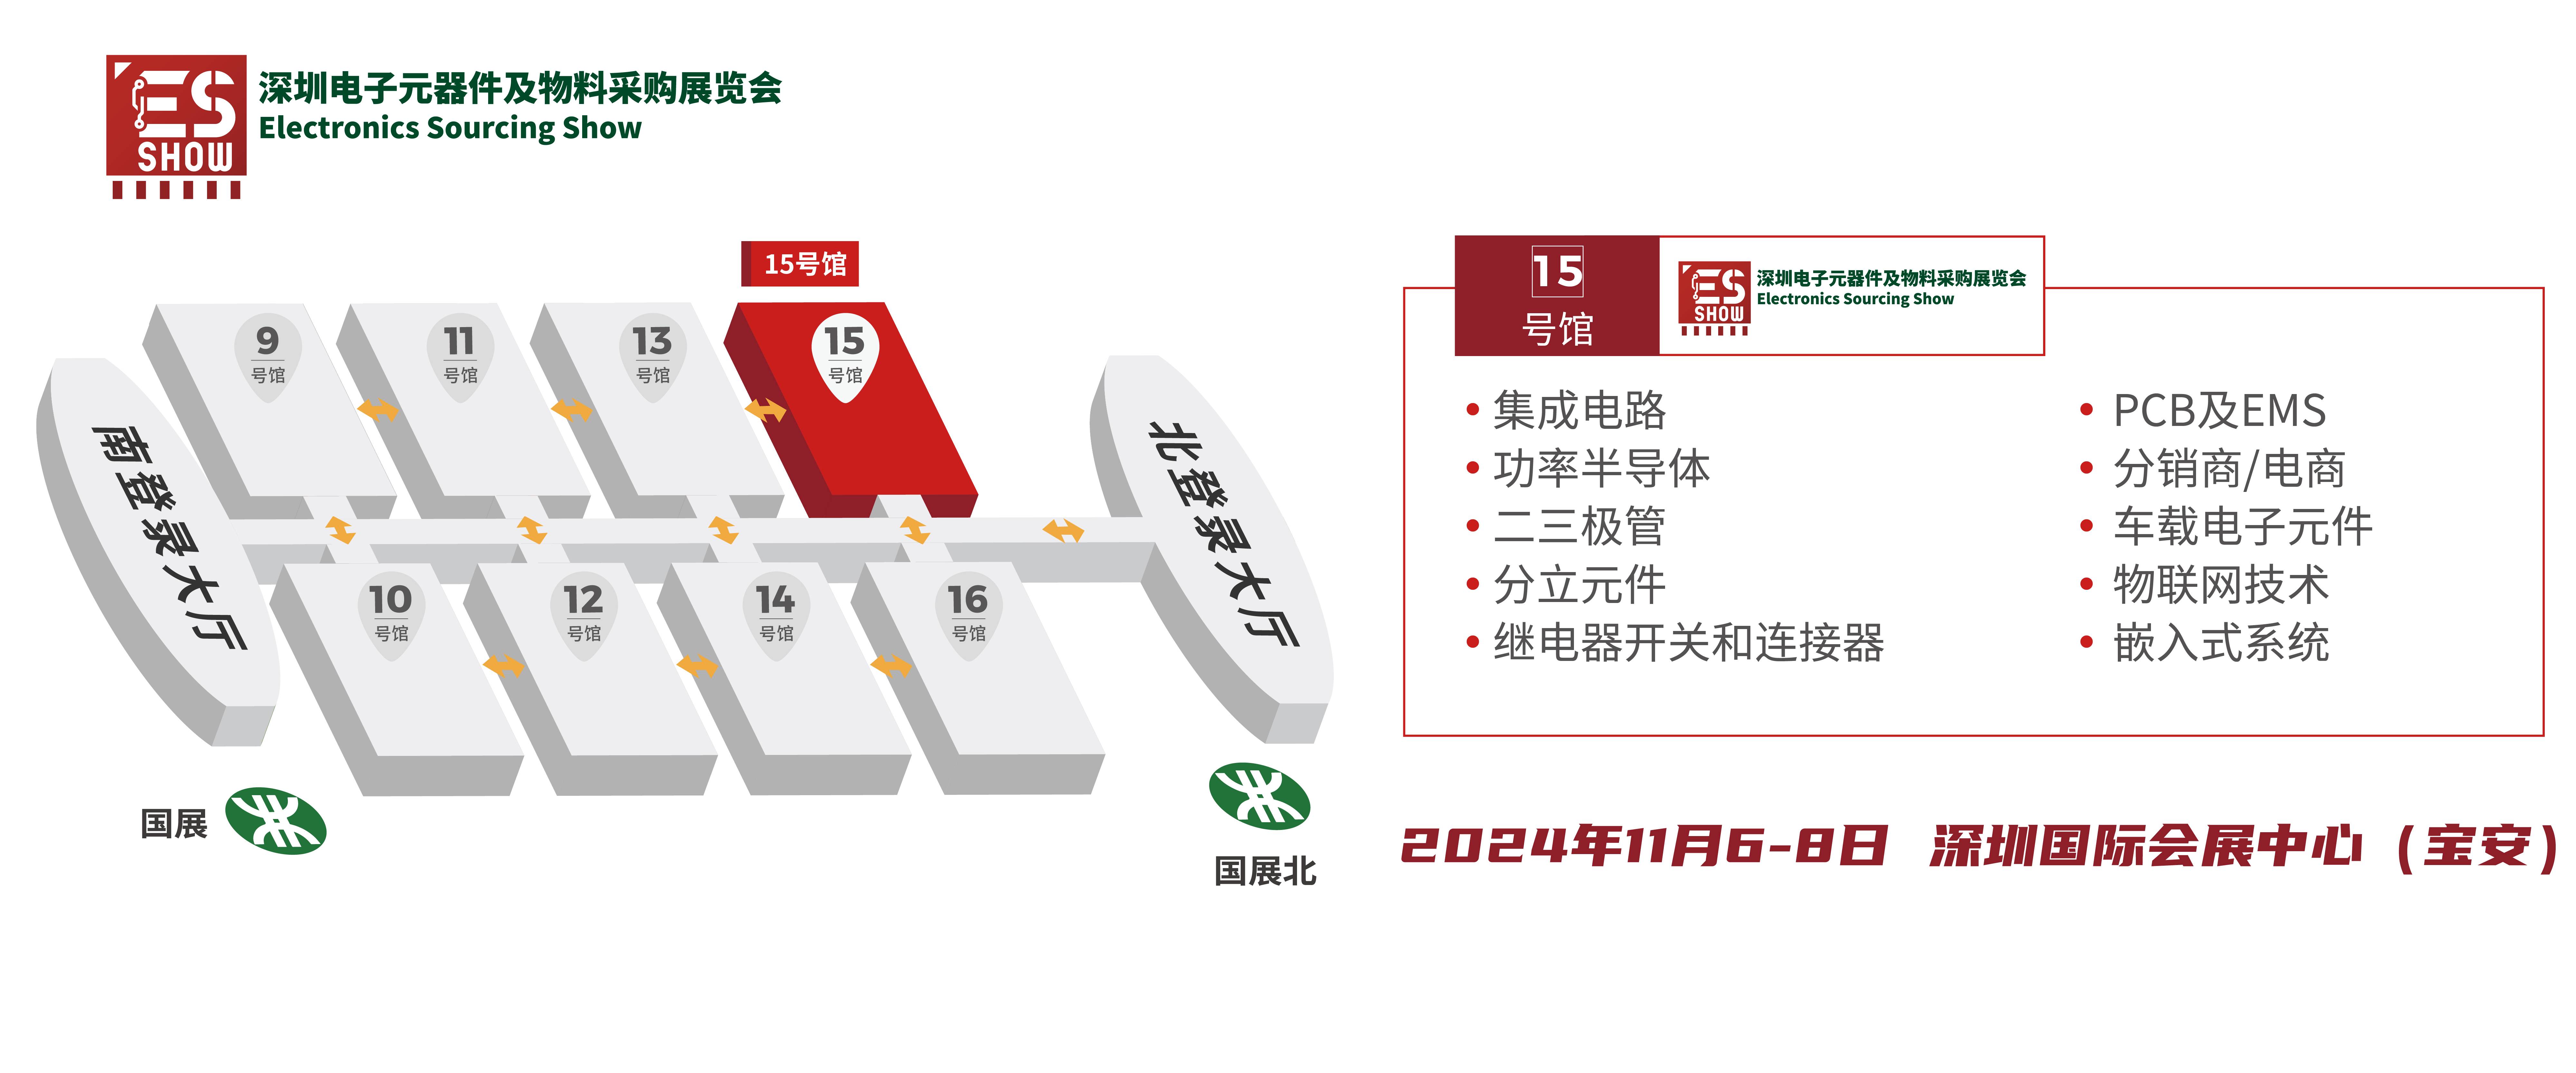 LVDS 华南电子展 电感 深圳电子展 中国电子展